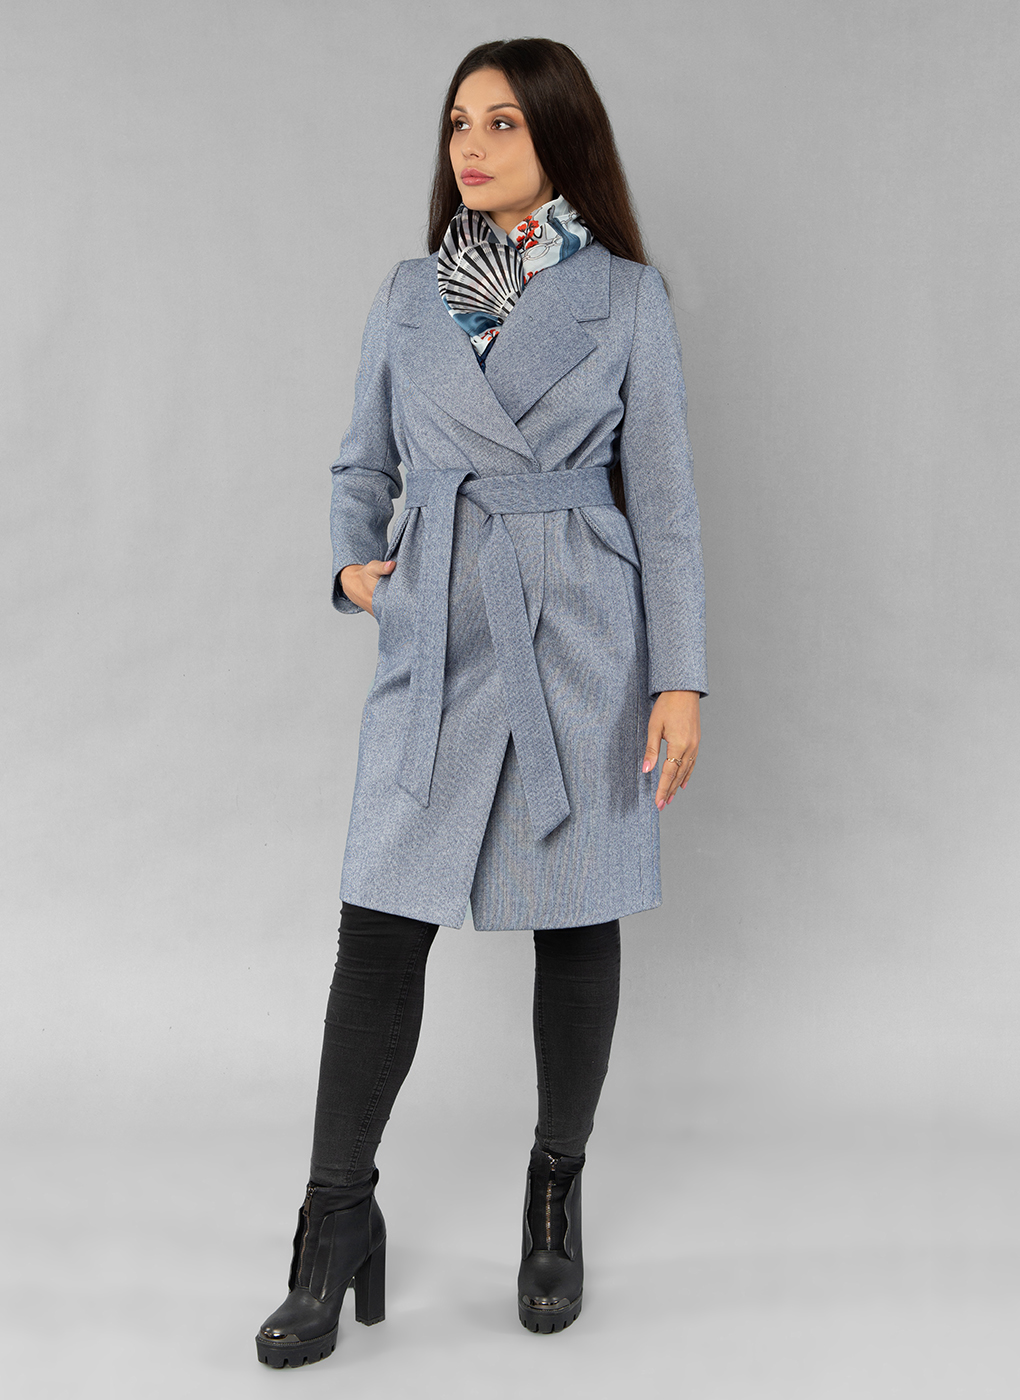 Пальто женское Sezalto 55023 синее 42 RU